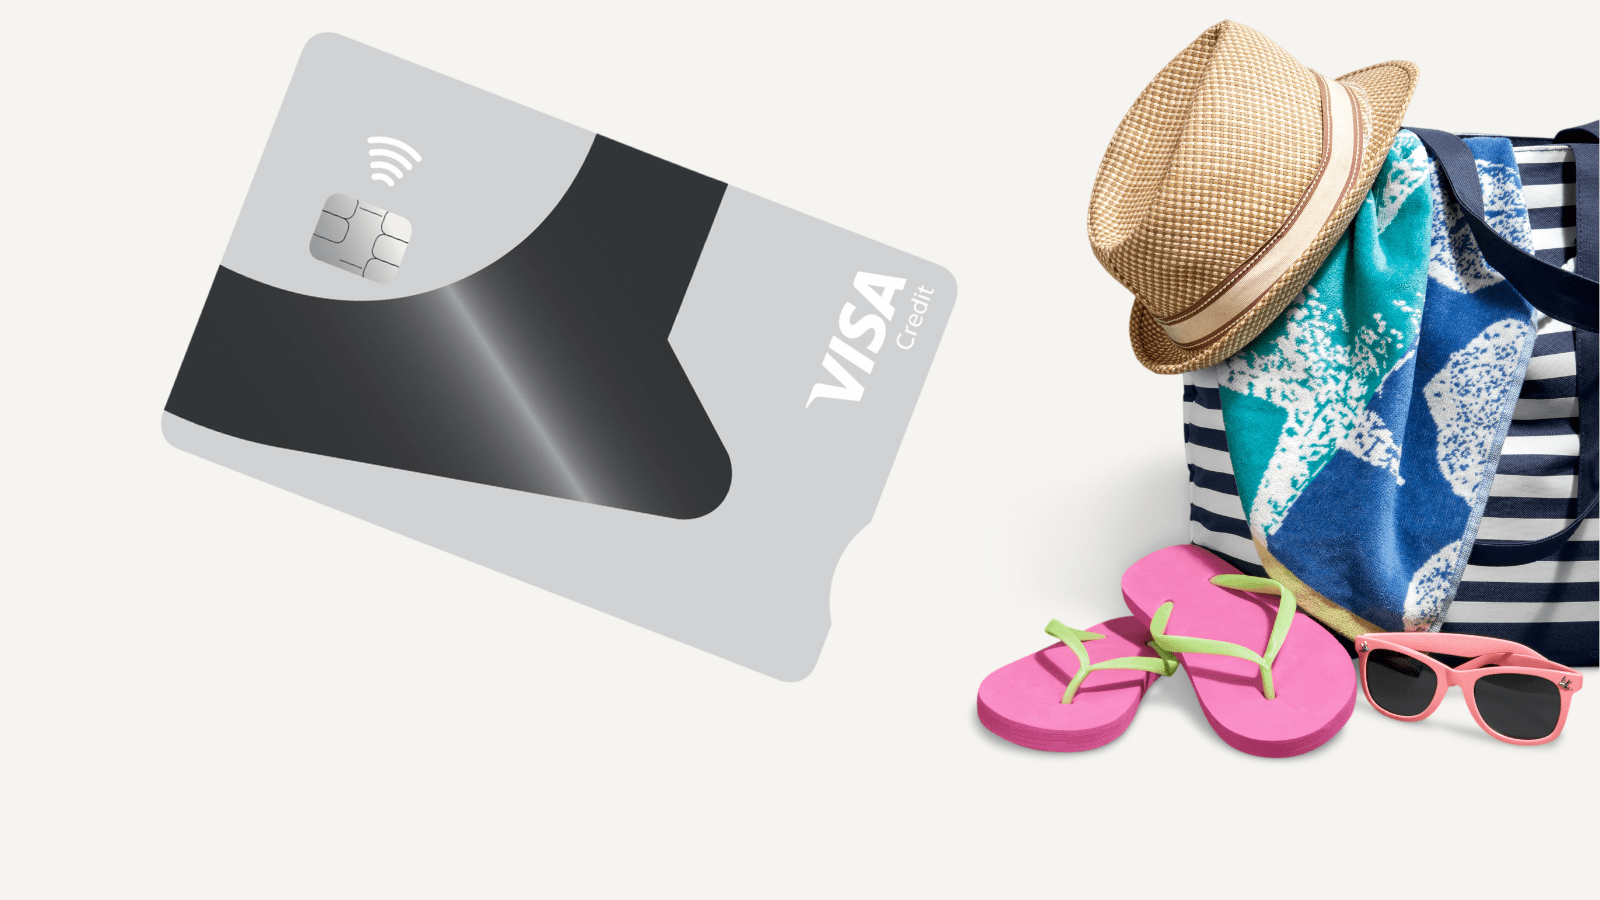 Kredittkort og strandbag